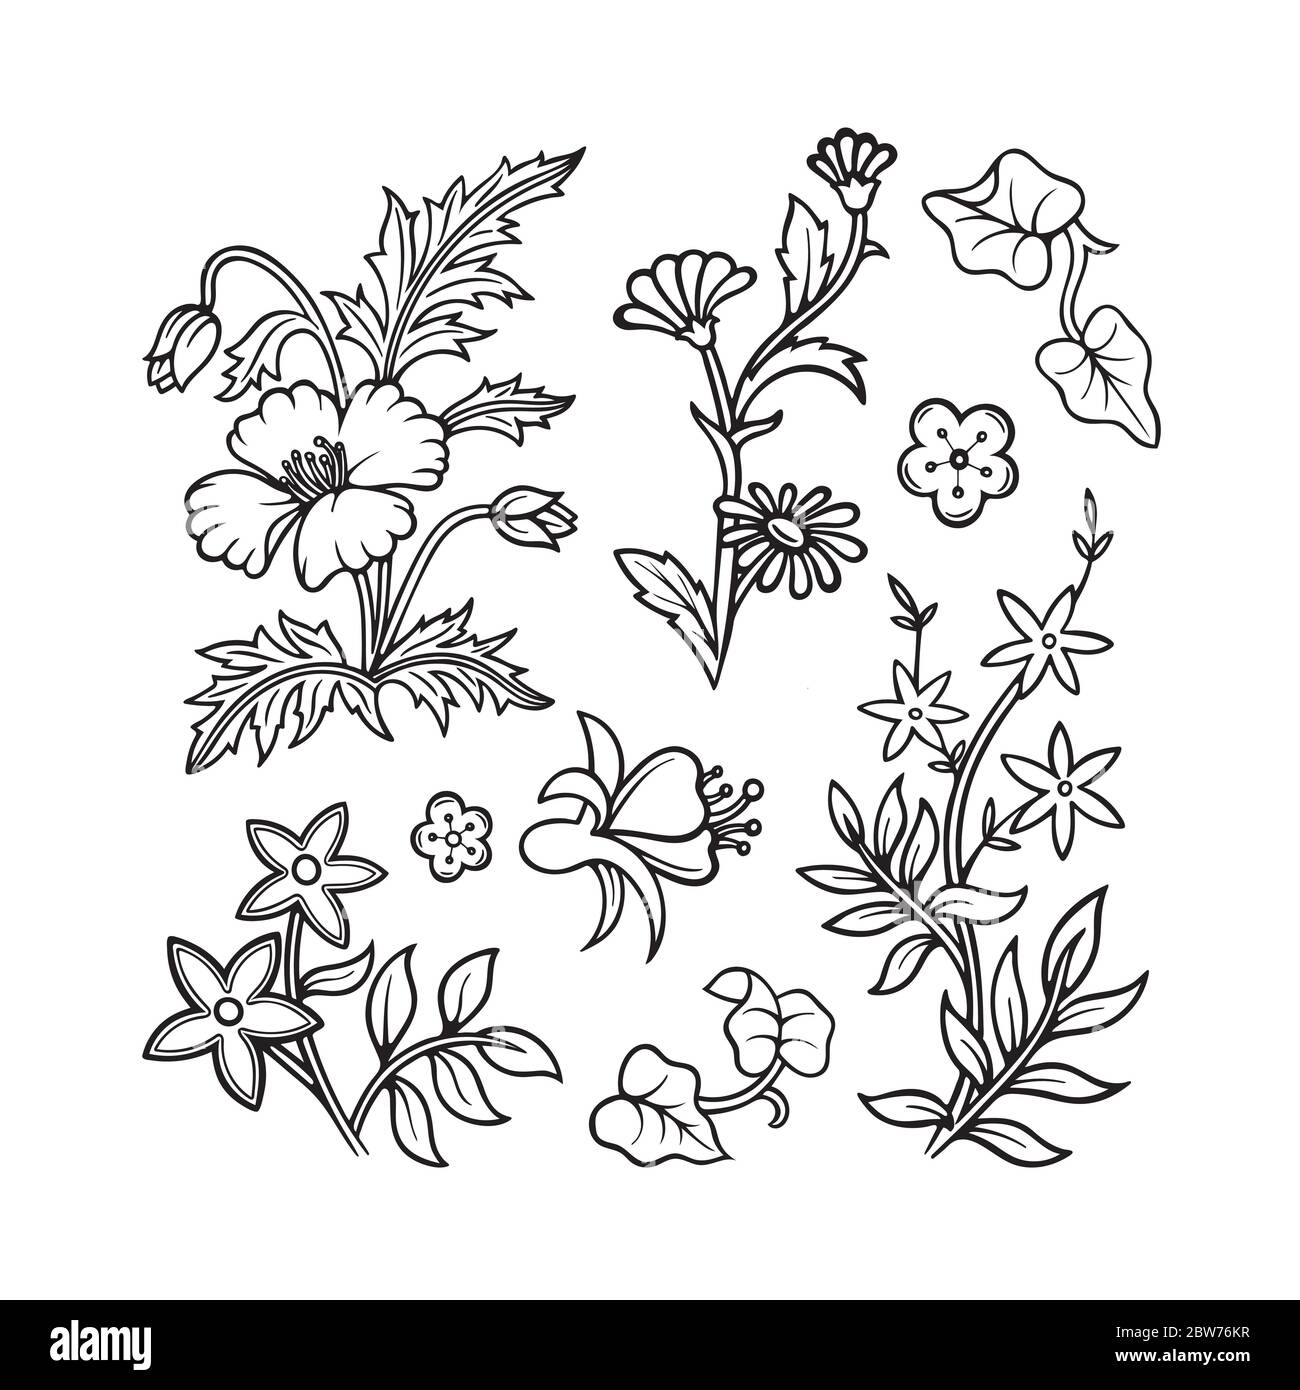 Blumen. Doodle Blumen und Pflanzen Vektor-Illustrationen Set. Handgezeichneter floraler Ornament Konstruktor. Teil des Sets. Stock Vektor